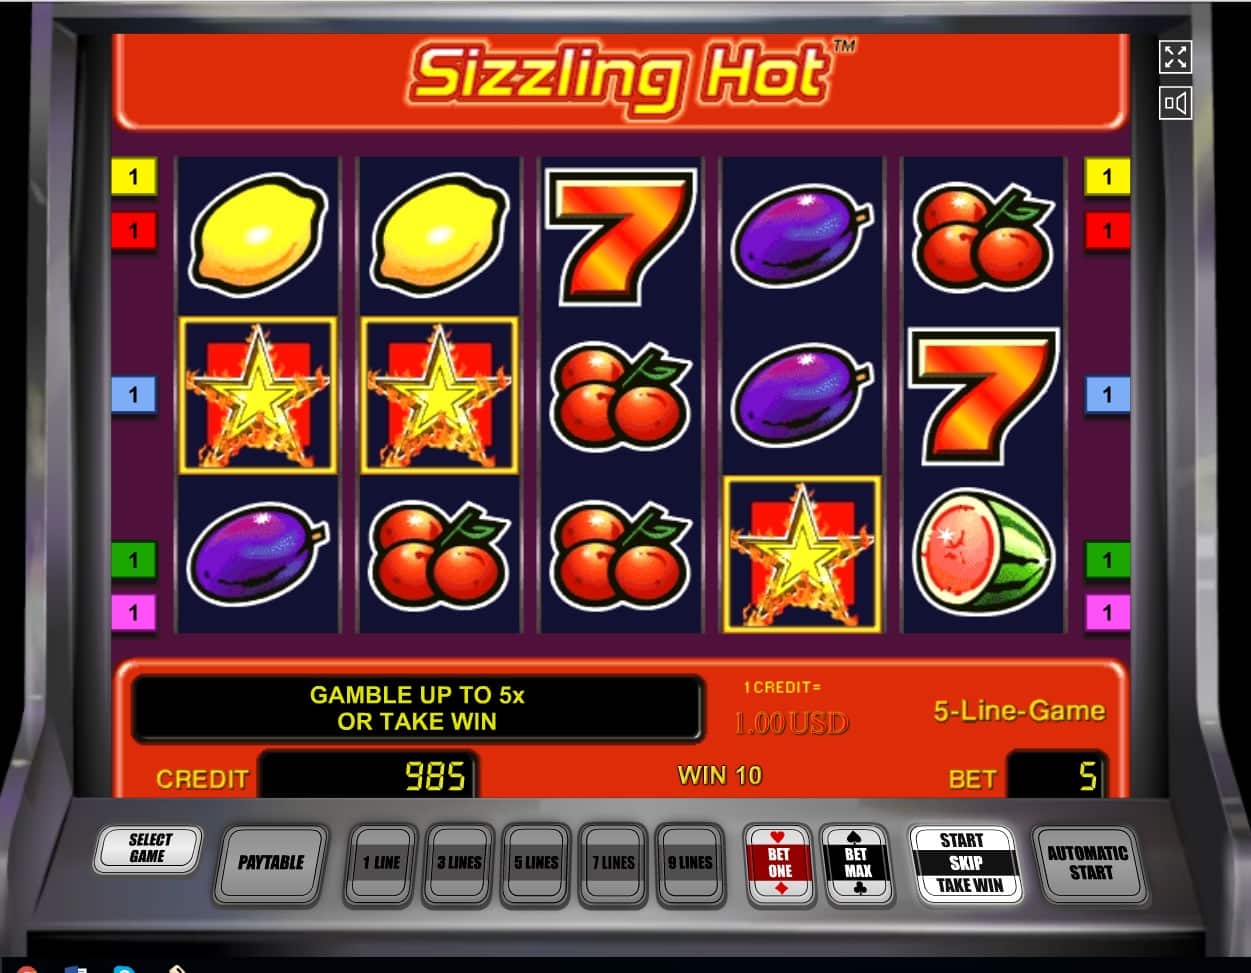 Игровые автоматы snizzinghot казино кристал пелас